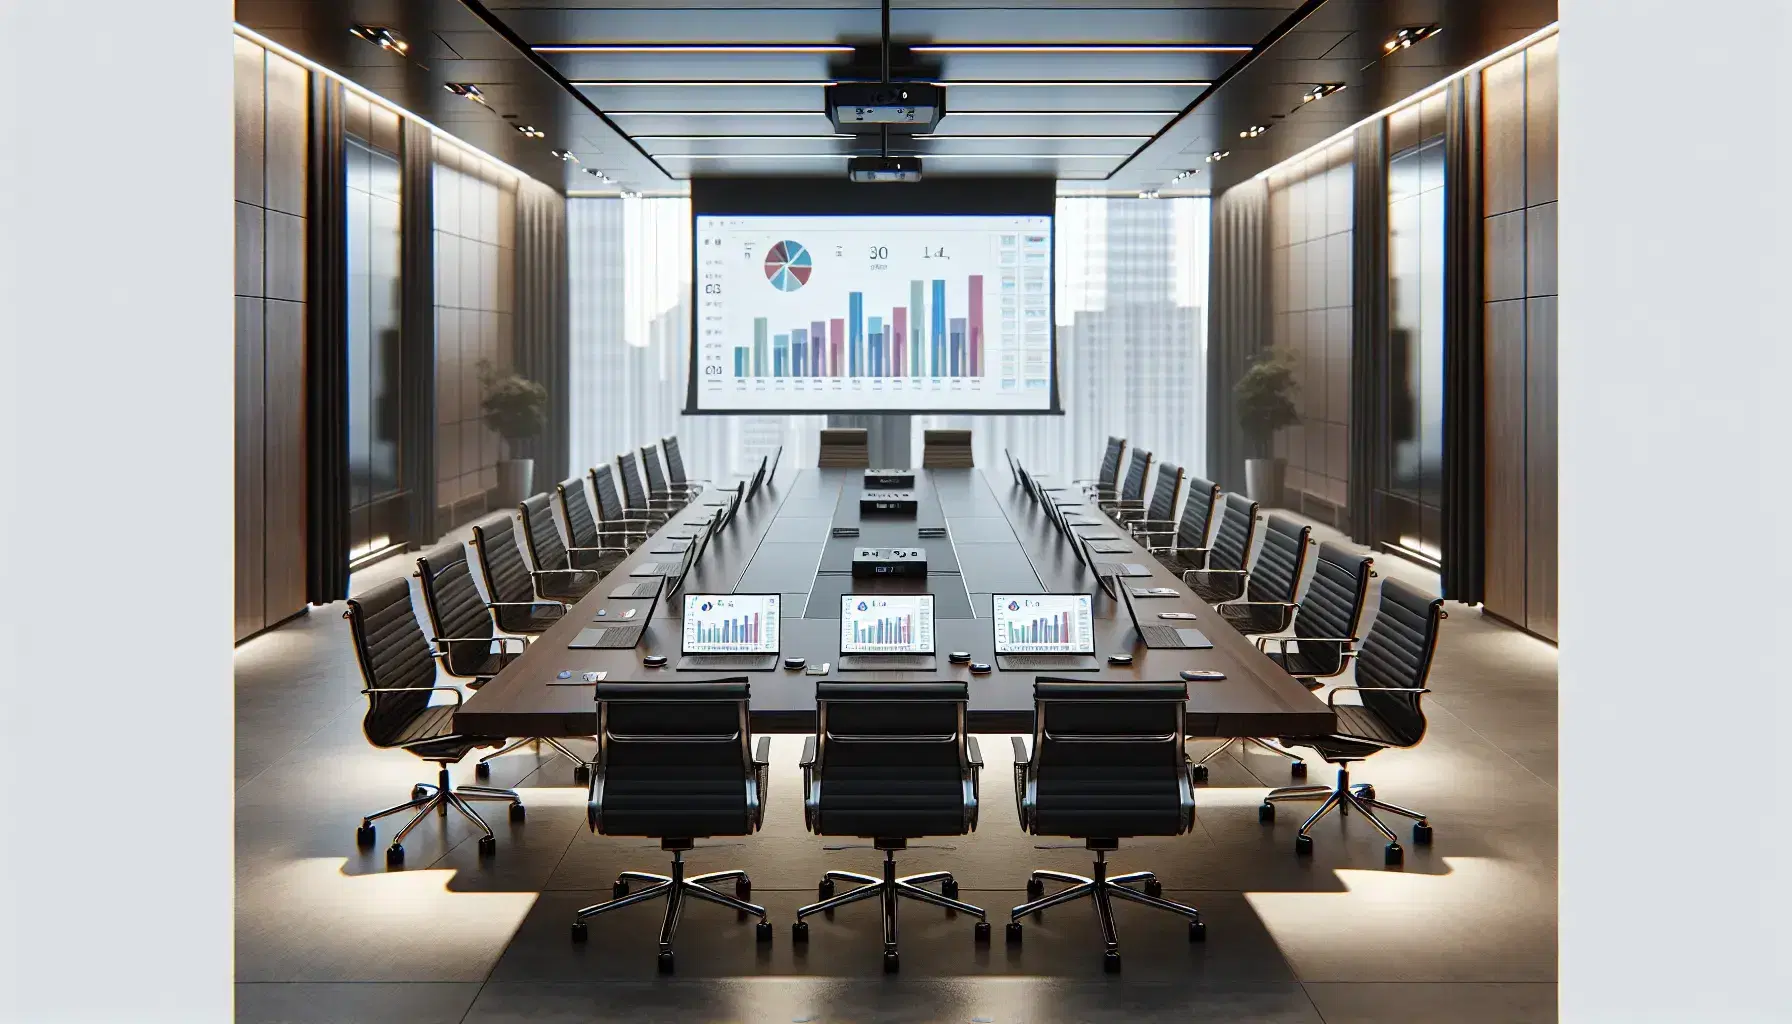 Sala de reuniones corporativa con mesa rectangular, sillas ergonómicas negras y laptops mostrando gráficos, proyector encendido y vista urbana desde la ventana.